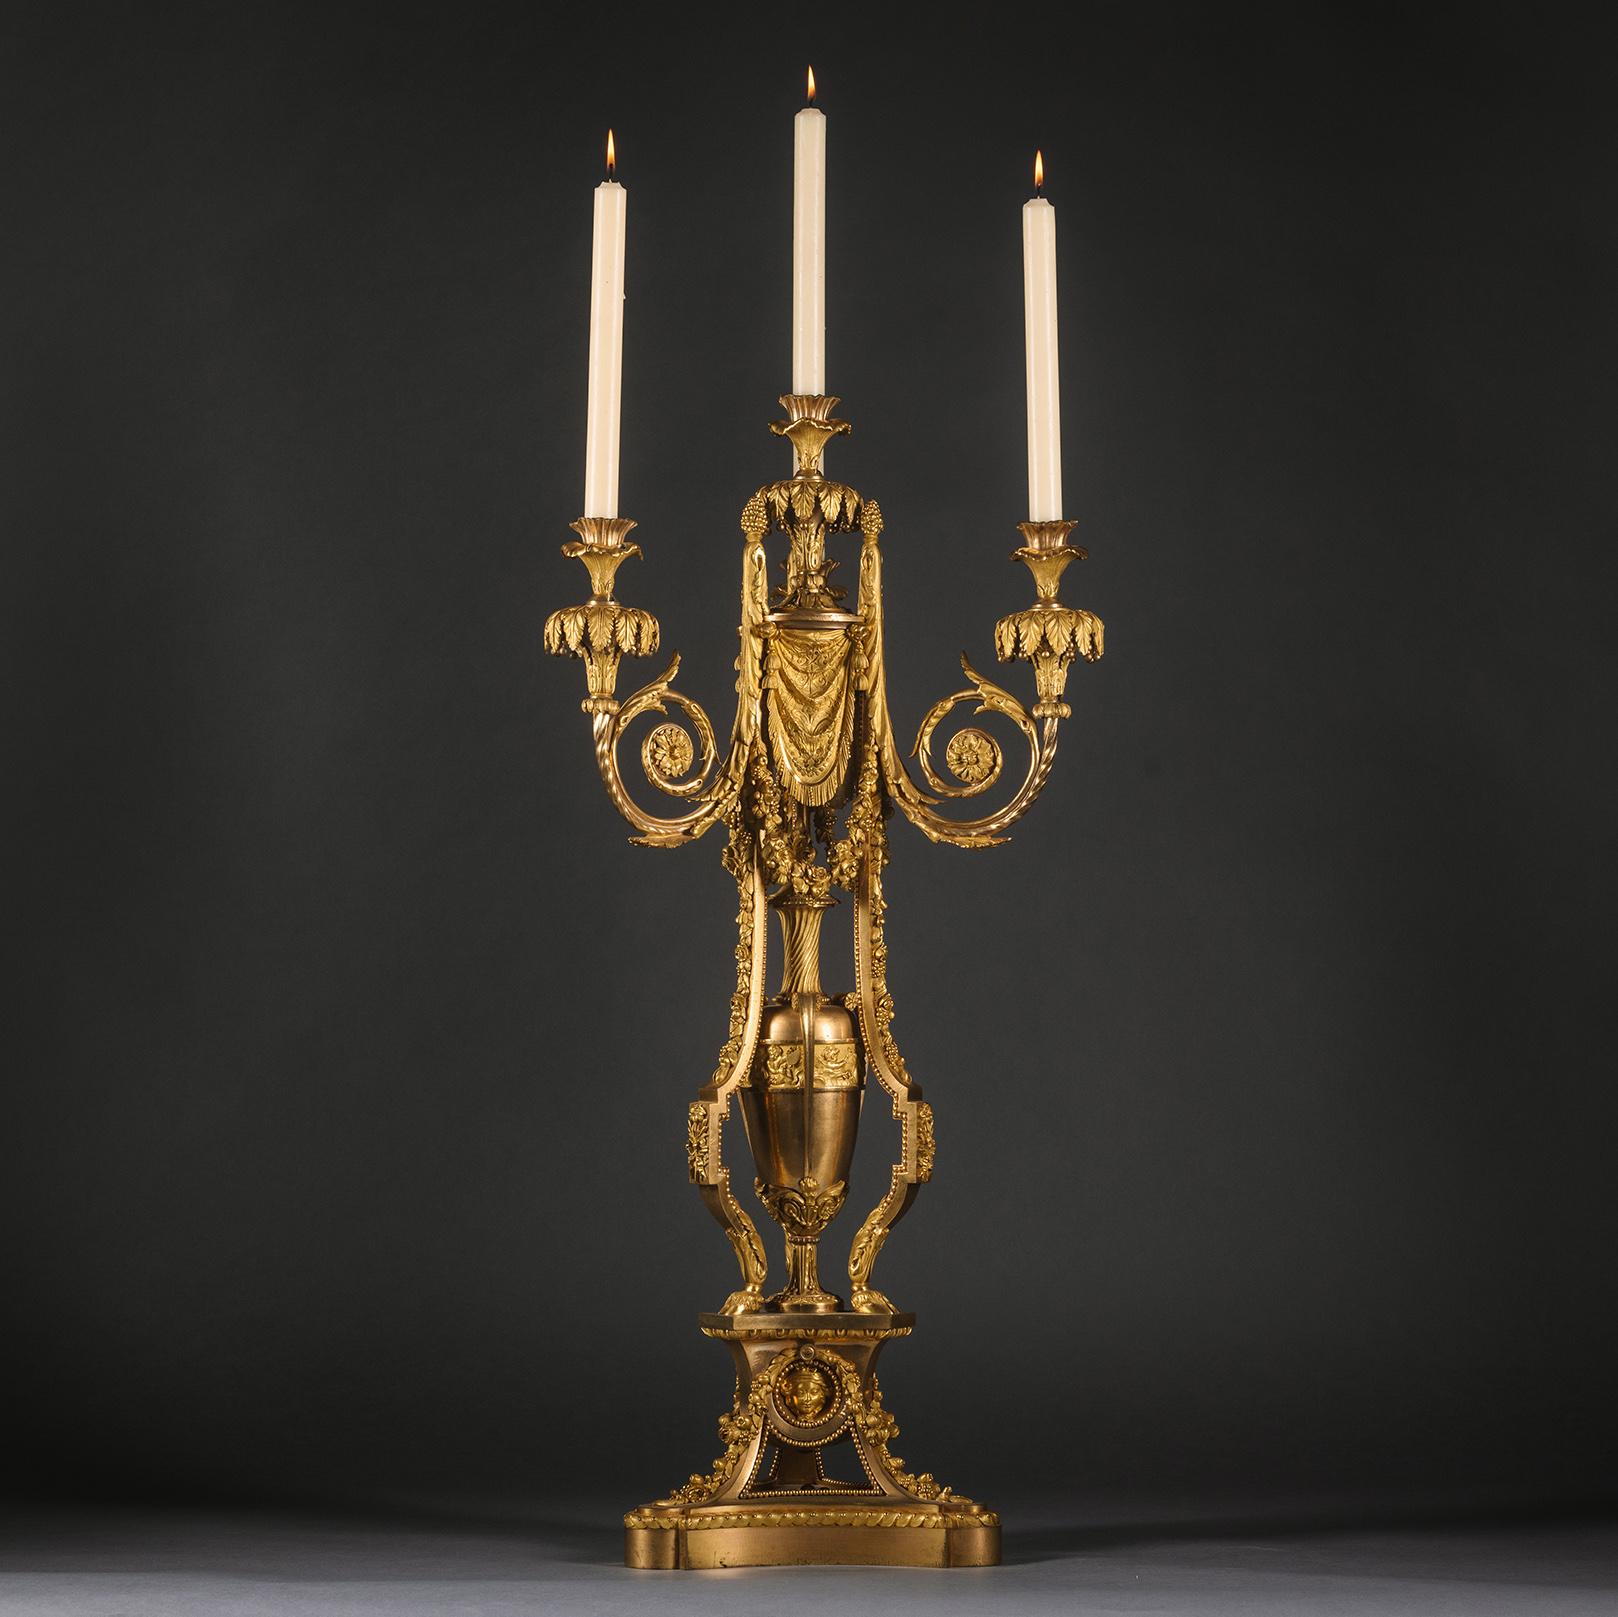 Grand et impressionnant candélabre à quatre lumières en bronze doré de style Louis XVI, d'après le modèle attribué à Pierre Gouthière.

Finement moulée et dorée, avec une tige centrale qui donne naissance à trois branches à enroulement d'acanthe,